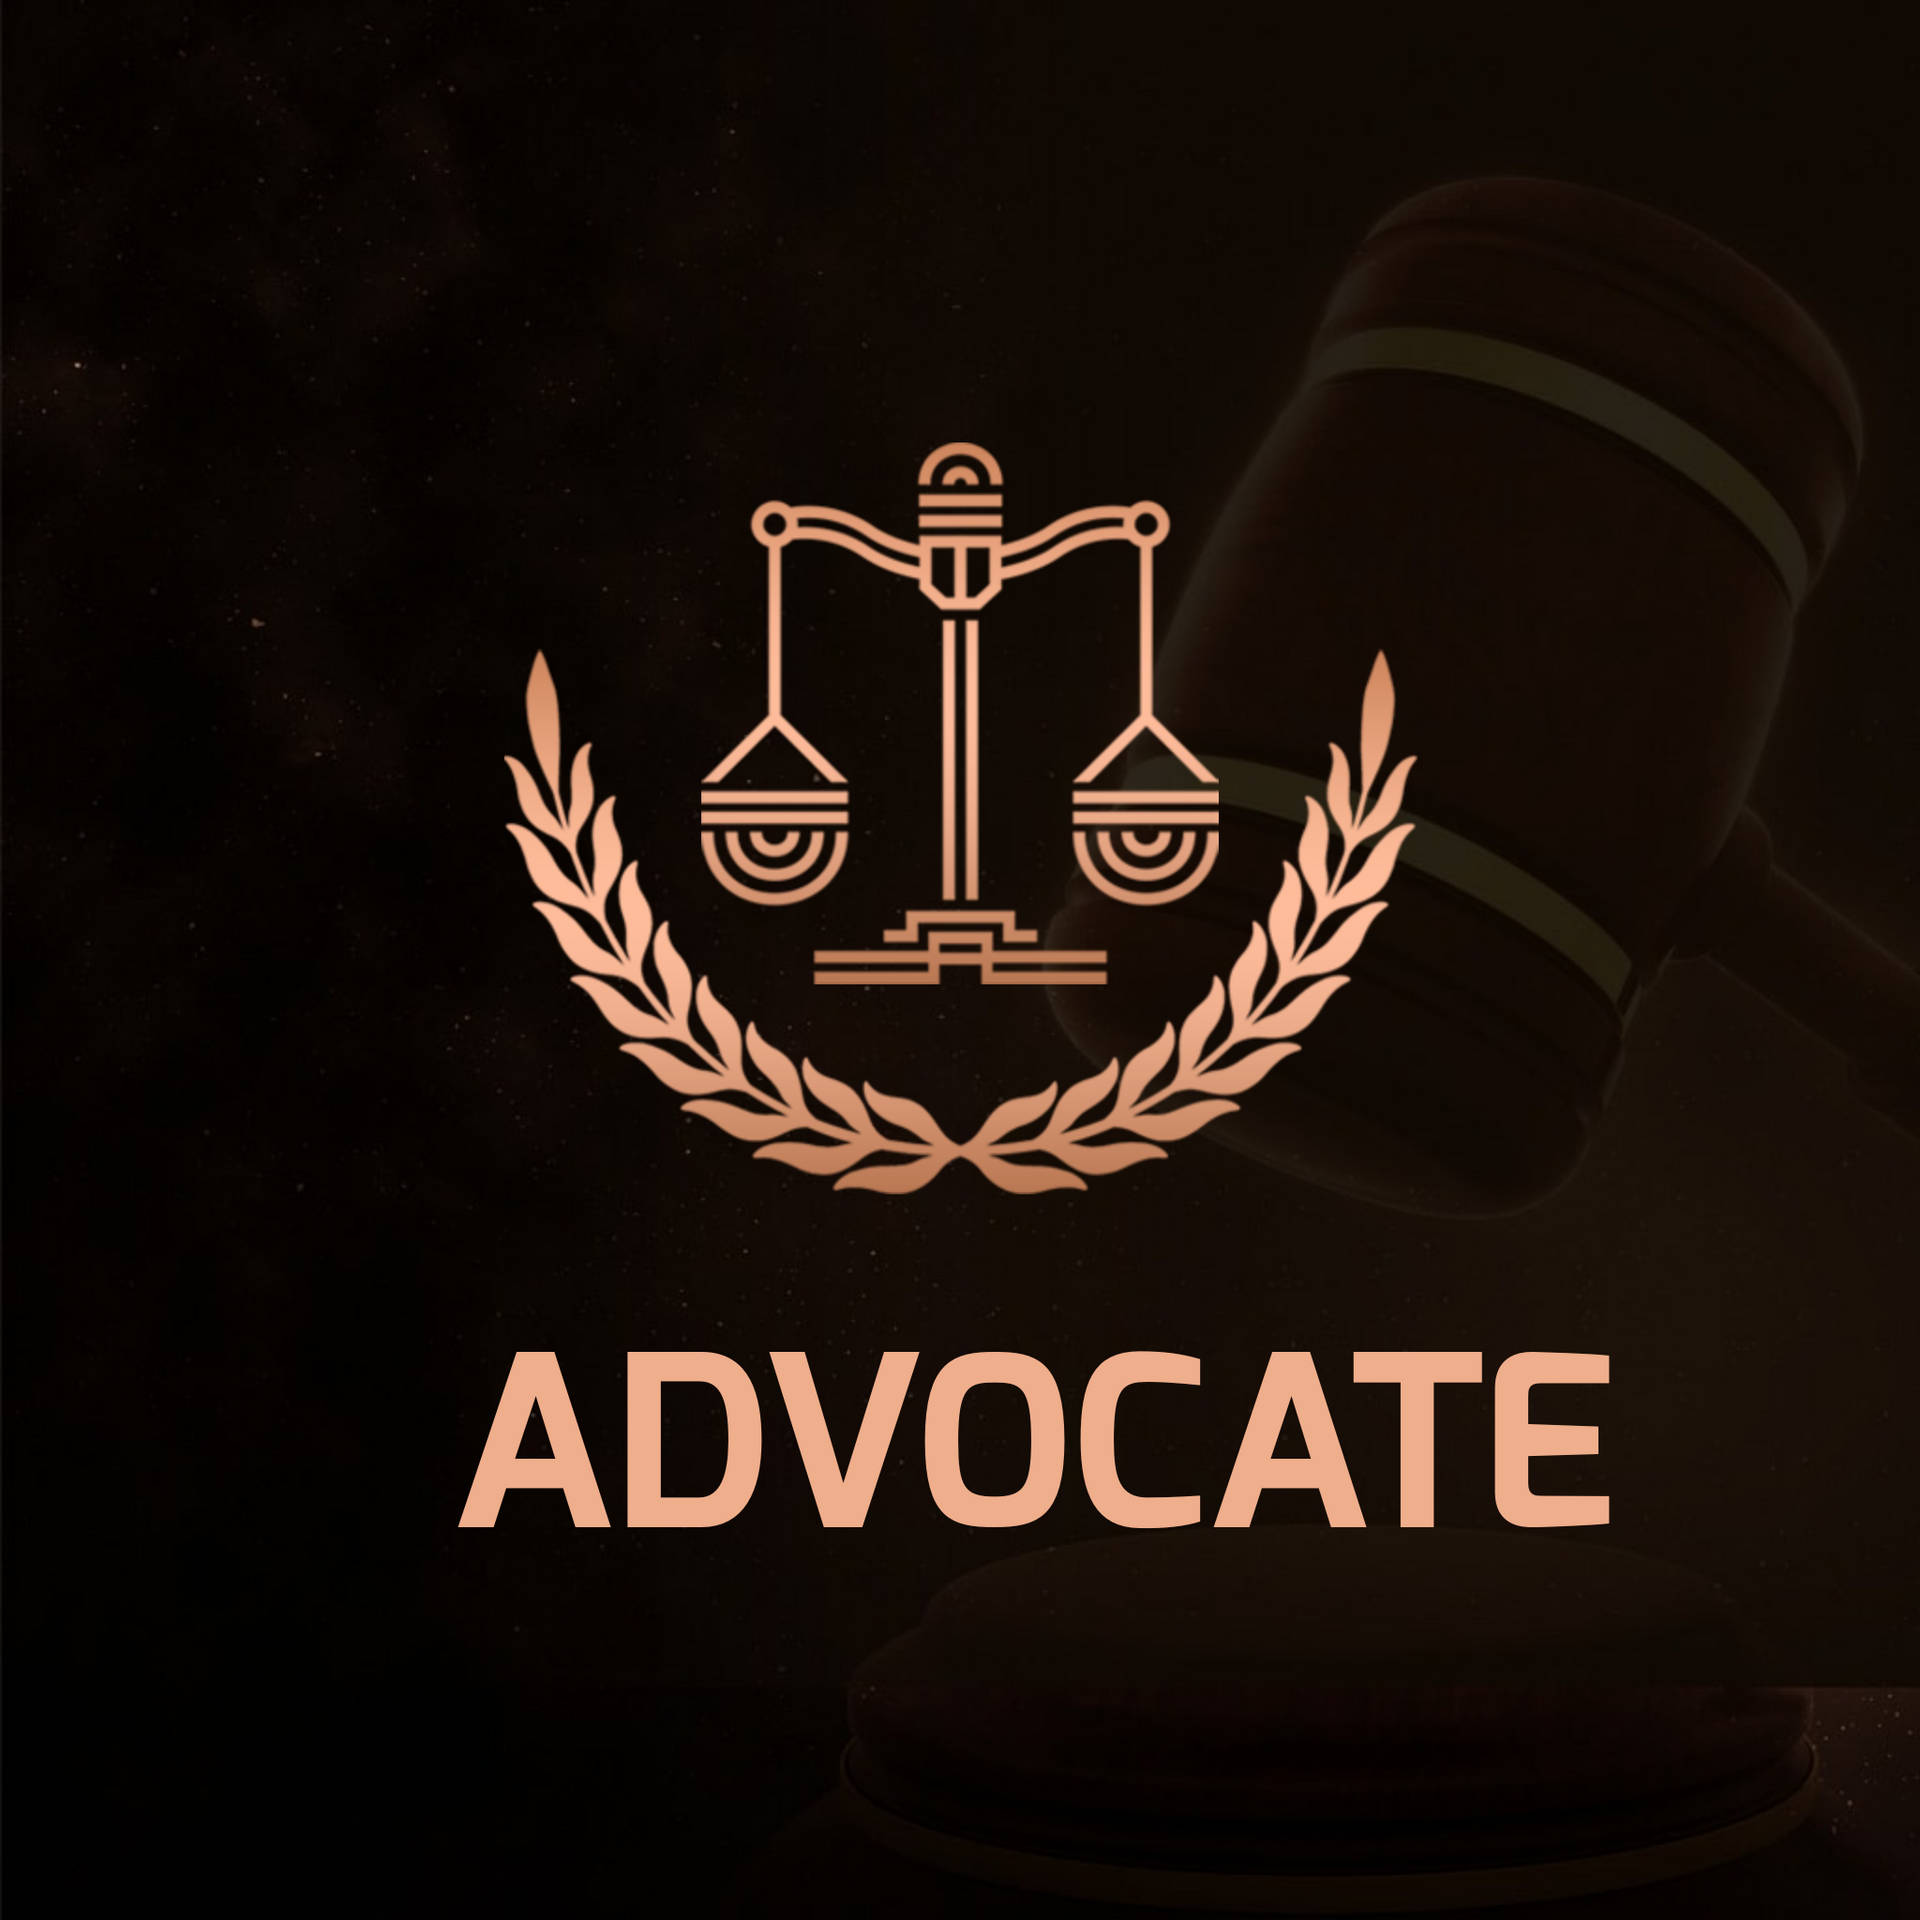 Logotipode Advocate En Negro. Fondo de pantalla